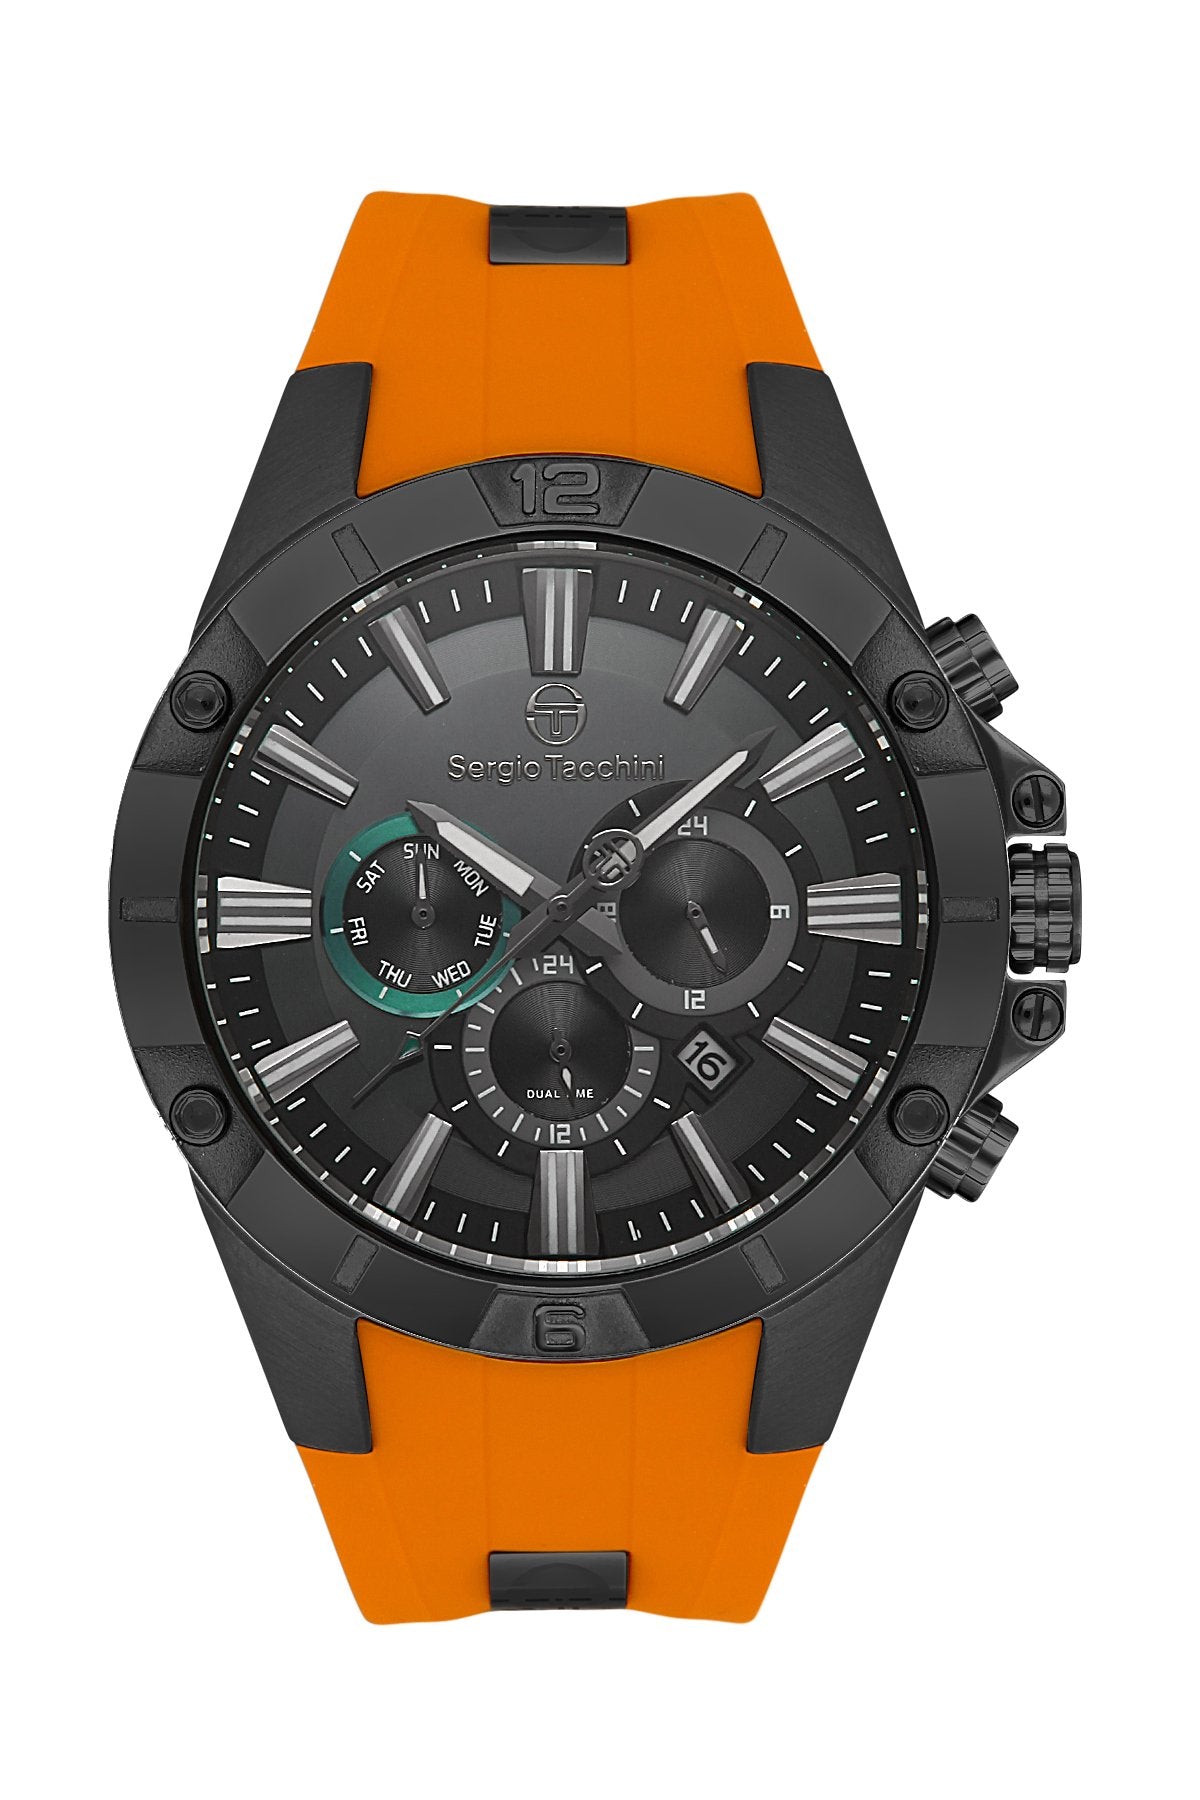 | Sergio Tacchini Men's Watch ST.1.10364-4 - Takreem Precision| - #sho| Sergio Tacchini Men's Watch ST.1.10364-4 - Takreem Precision|p_name#| Sergio Tacchini Men's Watch ST.1.10364-4 - Takreem Precision|WatchSergio TacchiniTakreem.joST.1.10364-48682308128000OrangRubberMen| Sergio Tacchini Men's Watch ST.1.10364-4 - Takreem Precision|